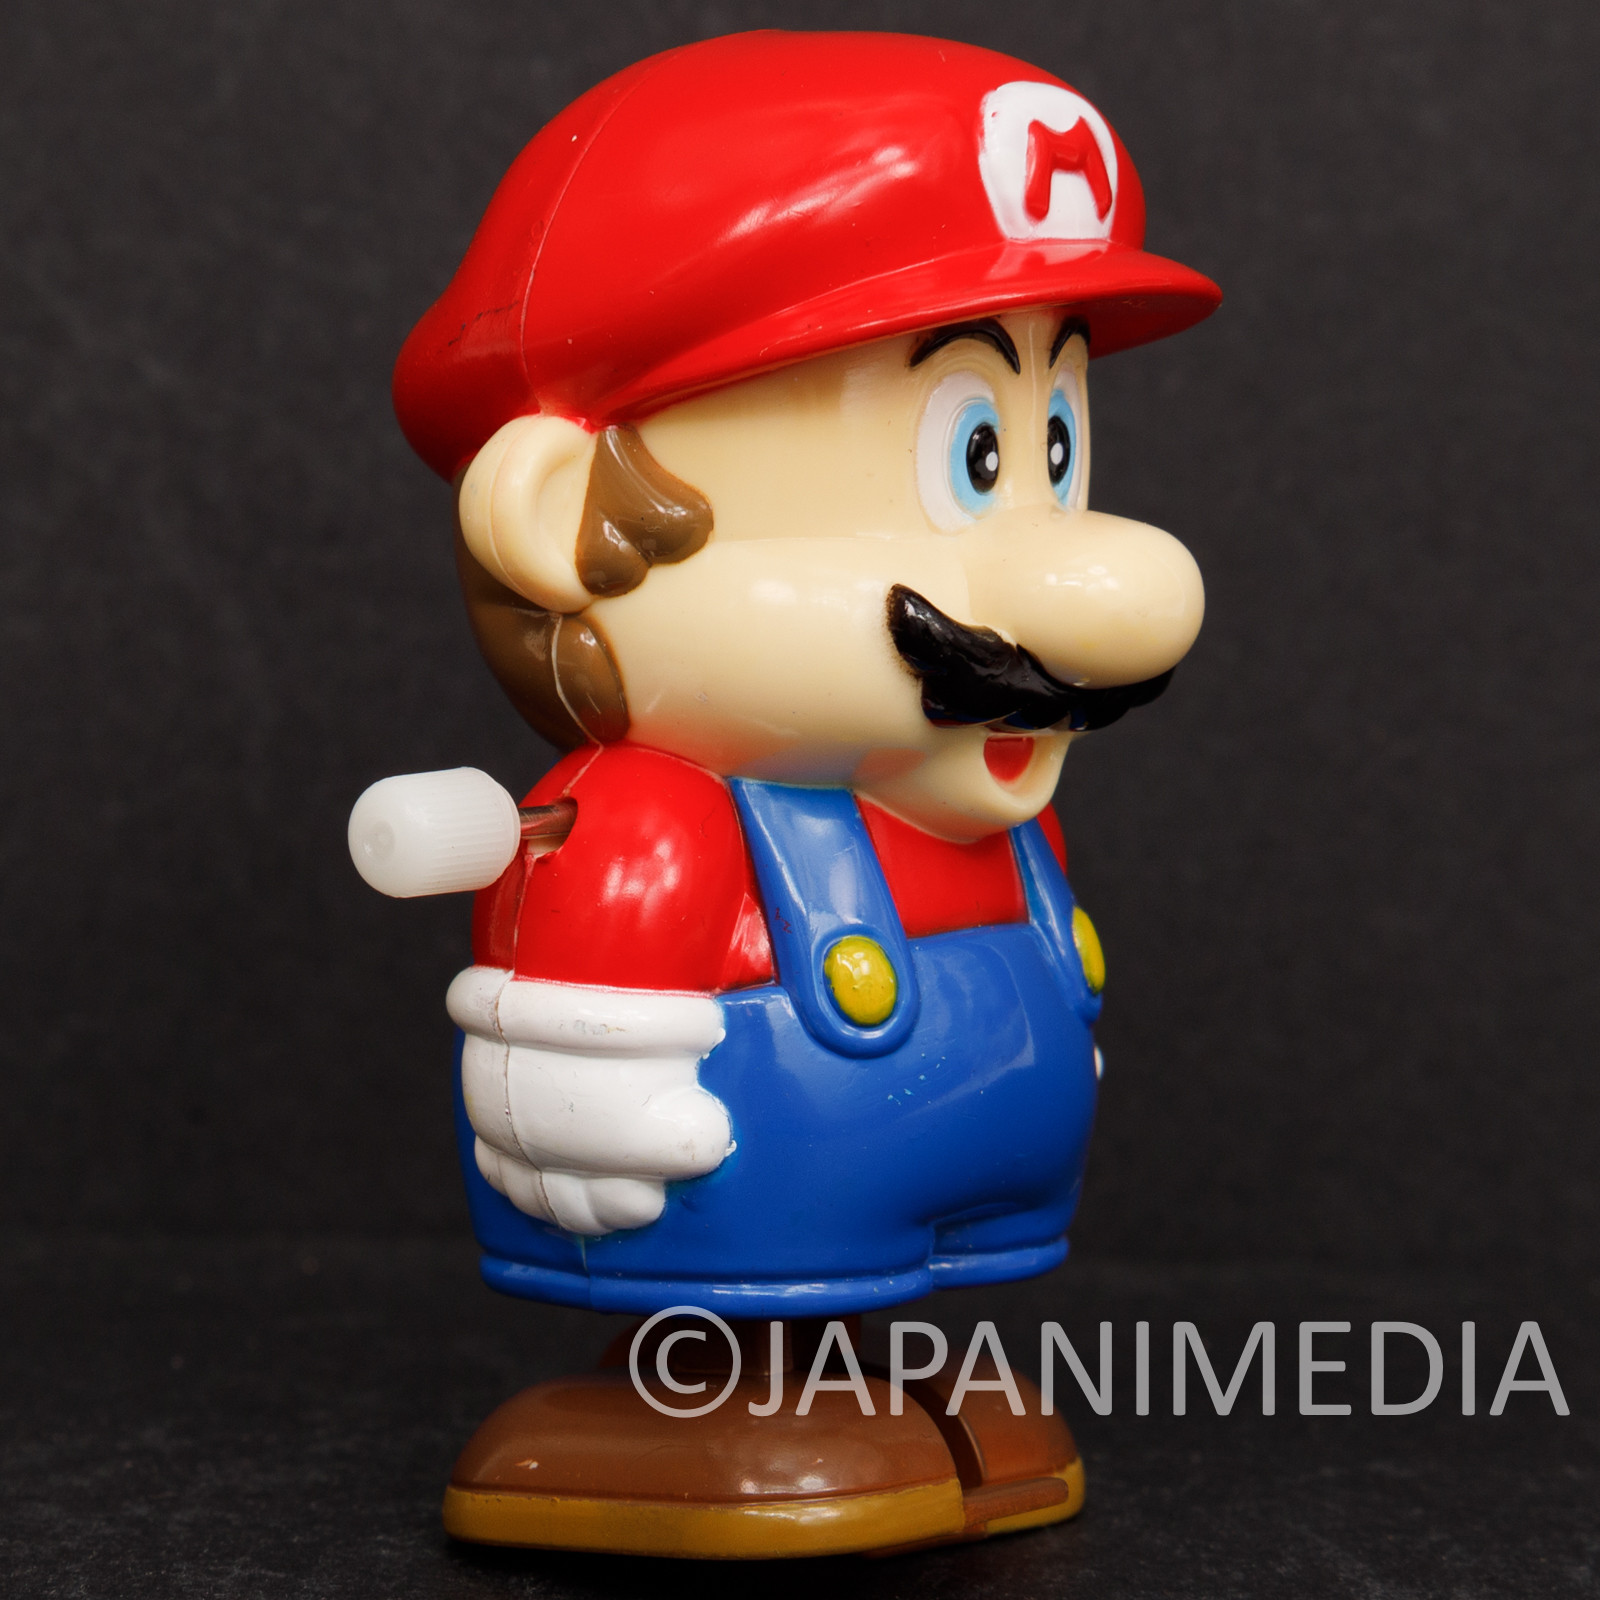 Retro RARE! Super Mario Bros. Wind-up Walking Figure JAPAN GAME NES